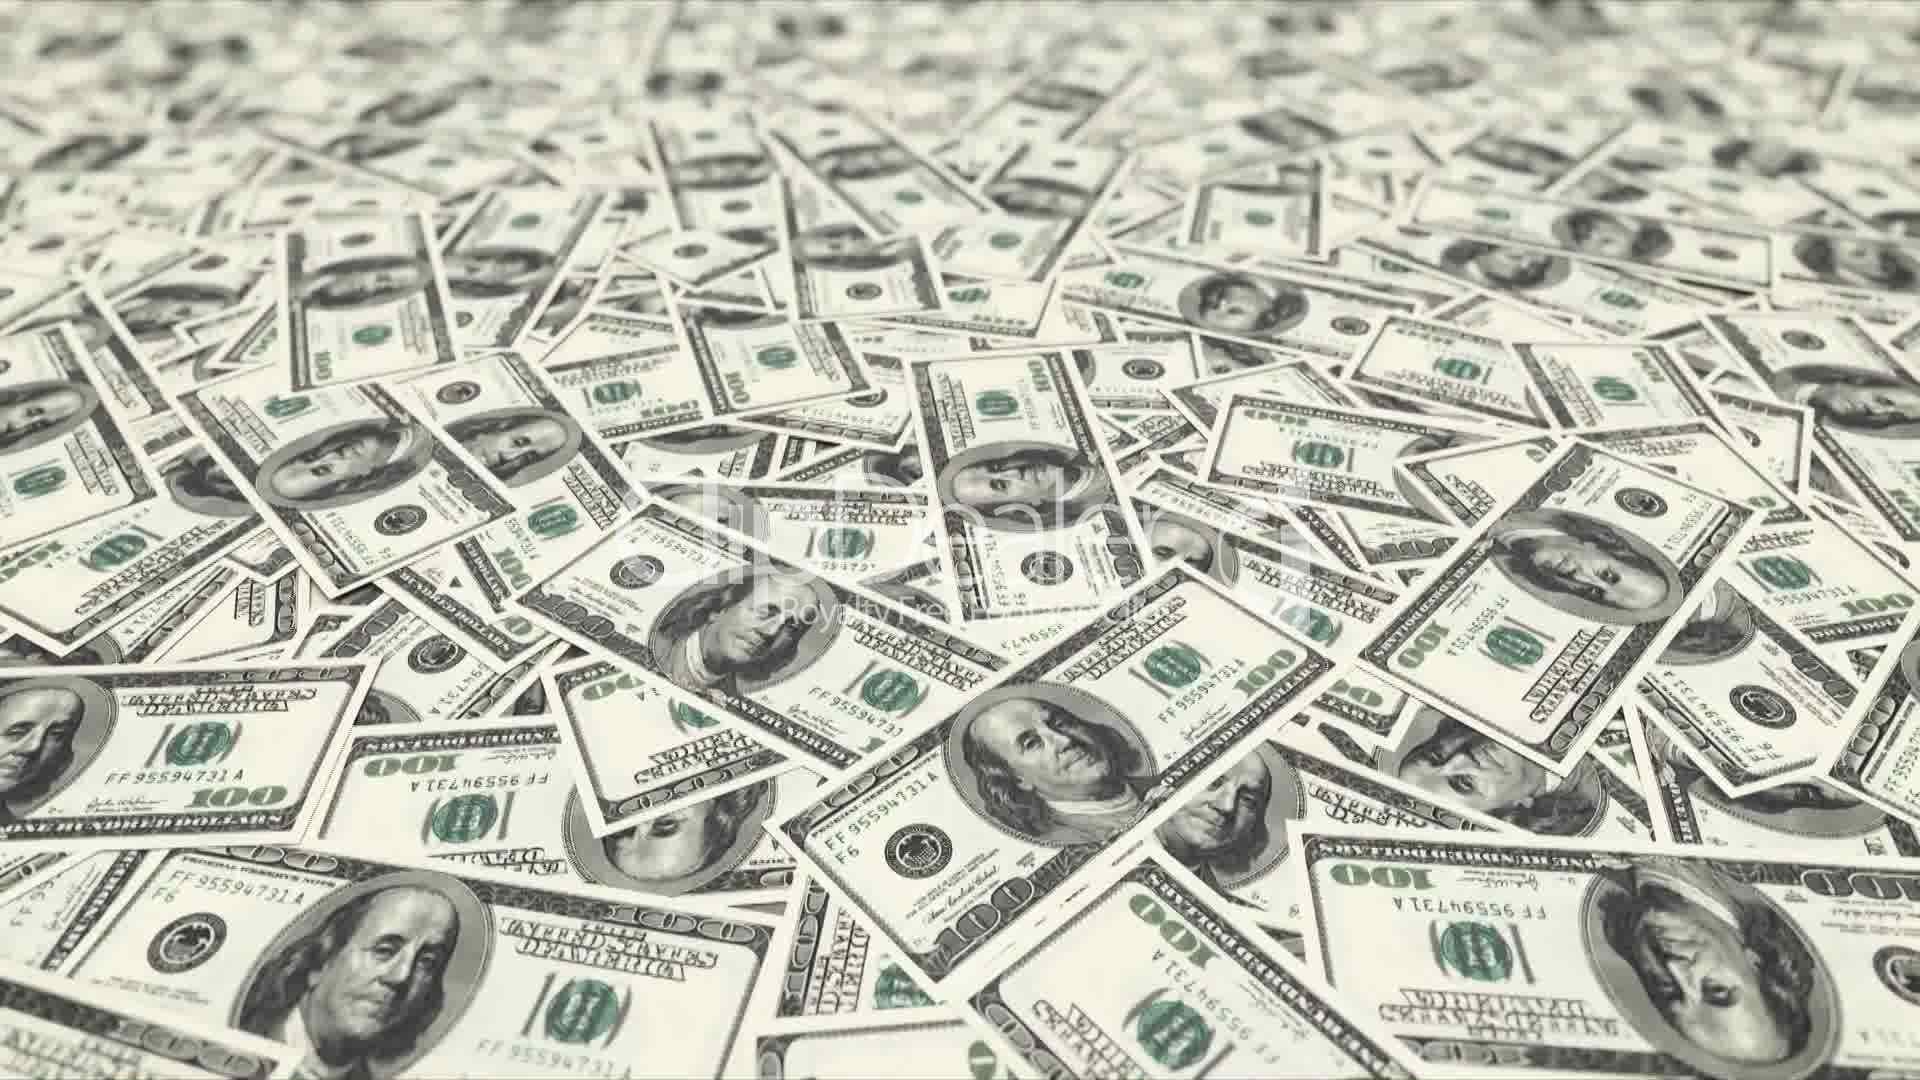 [45+] Free Money Wallpapers for Desktop | WallpaperSafari.com